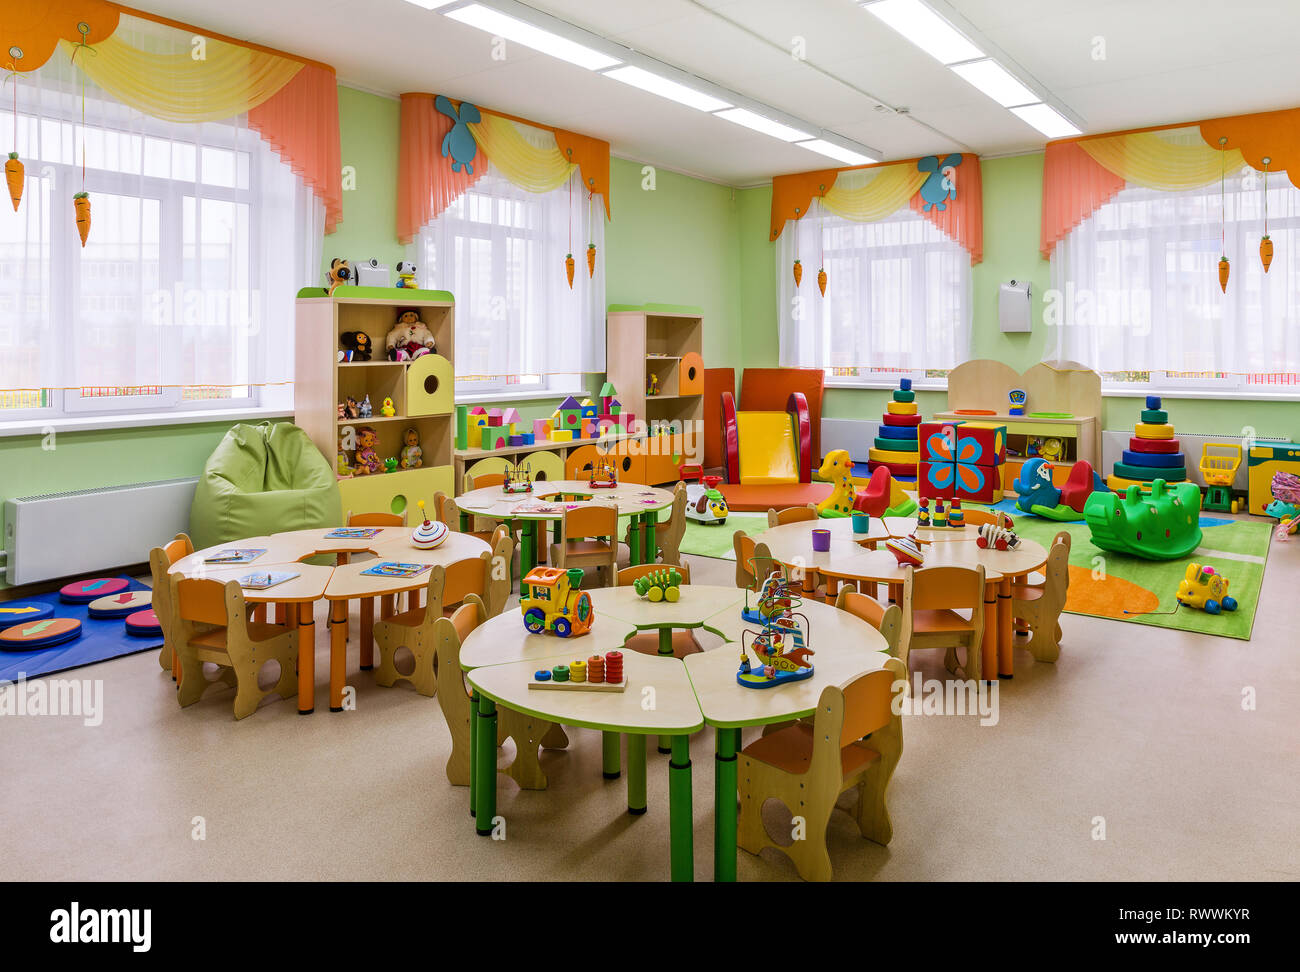 Salle de jeux. L'école maternelle avec des ensembles de jouets. Libre. Banque D'Images